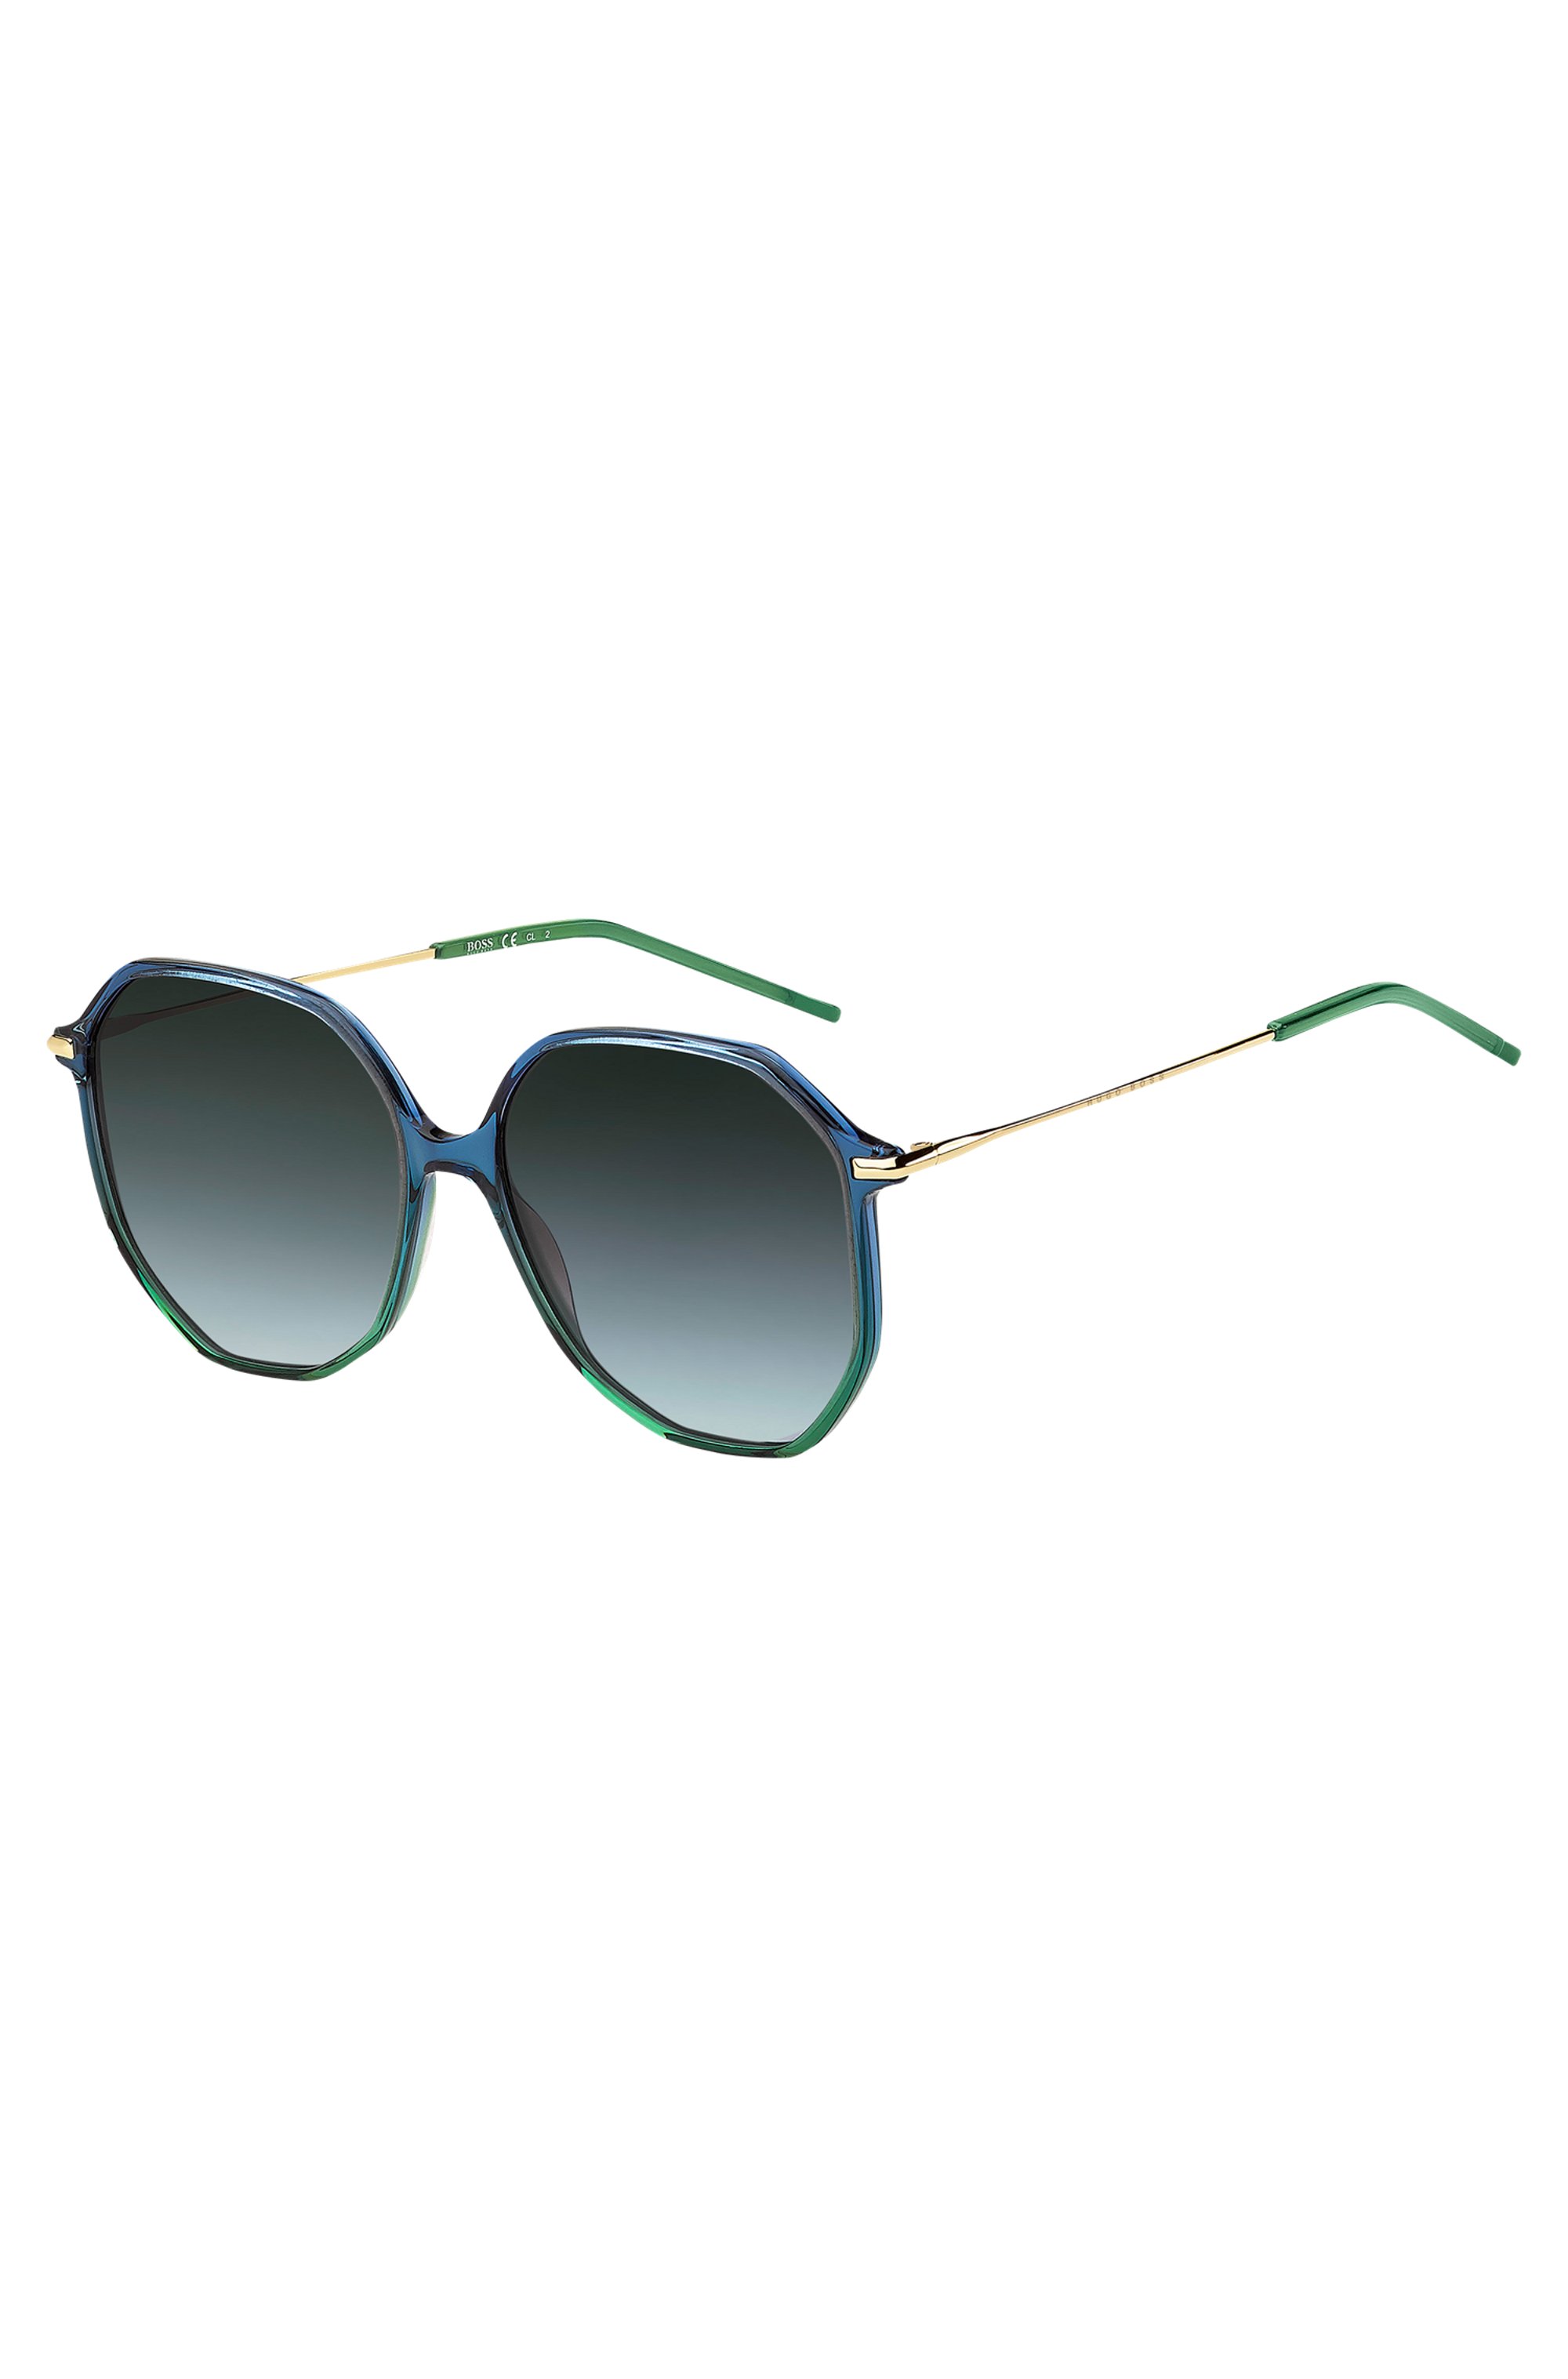 Sonnenbrille mit röhrenförmigen Bügeln und blau-grüner Fassung, Blau gemustert